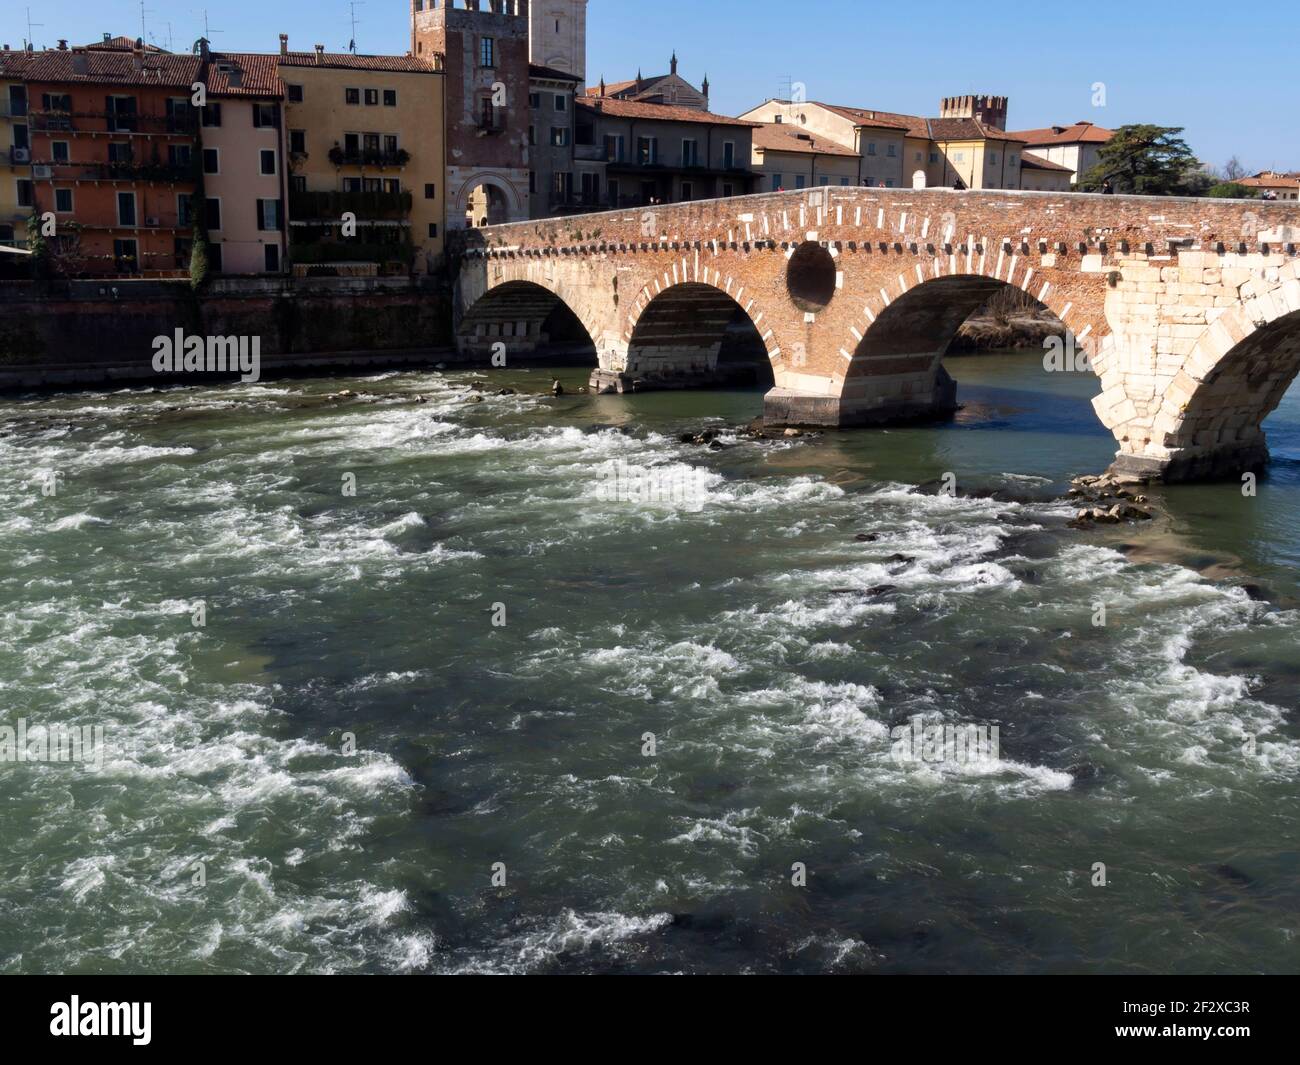 Il Ponte di pietra, il più antico ponte di Verona, è un ponte ad arco romano che attraversa il fiume Adige. Sotto il ponte, l'acqua b Foto Stock